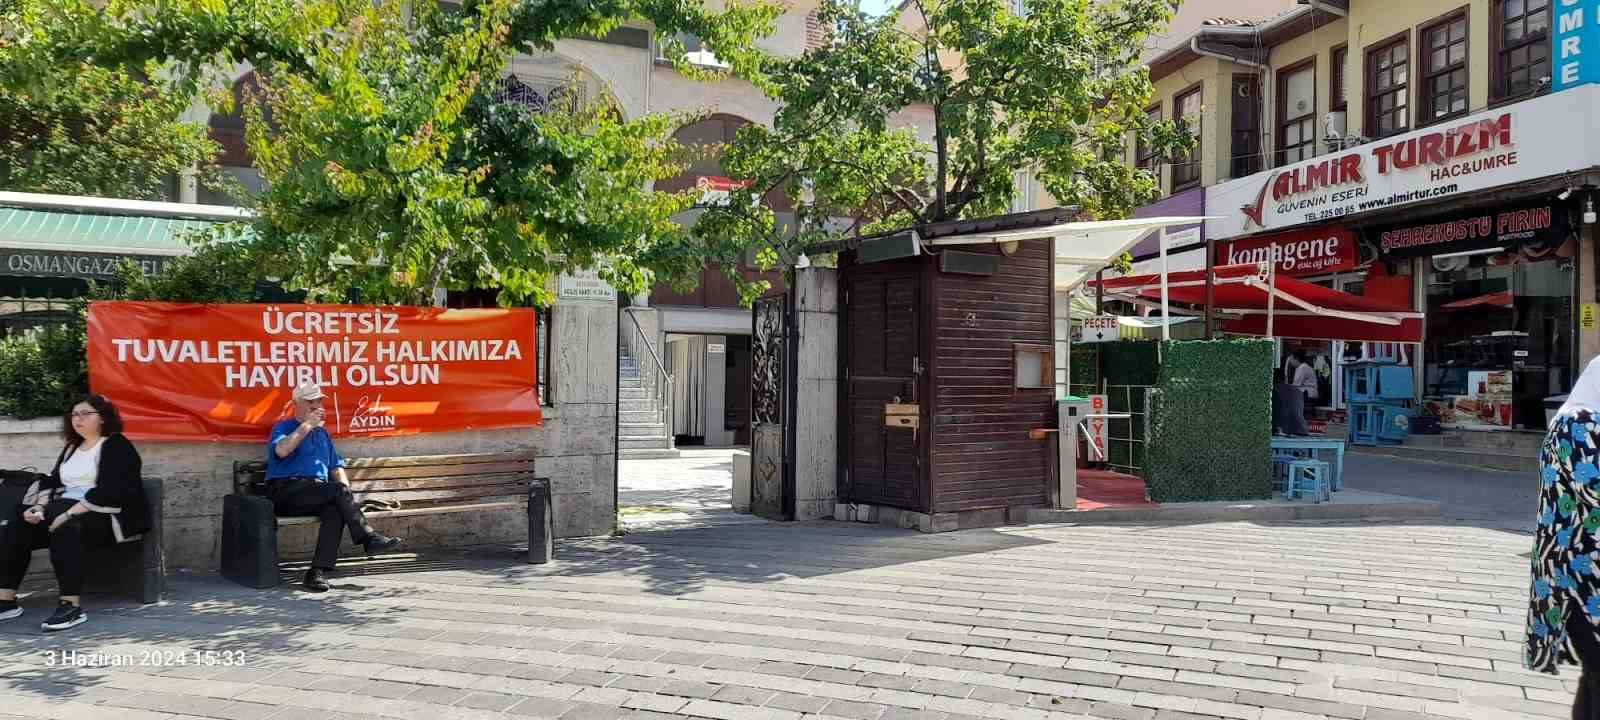 Osmangazide Tuvaletlerin Ücretsiz Olması Yargıya Takıldı